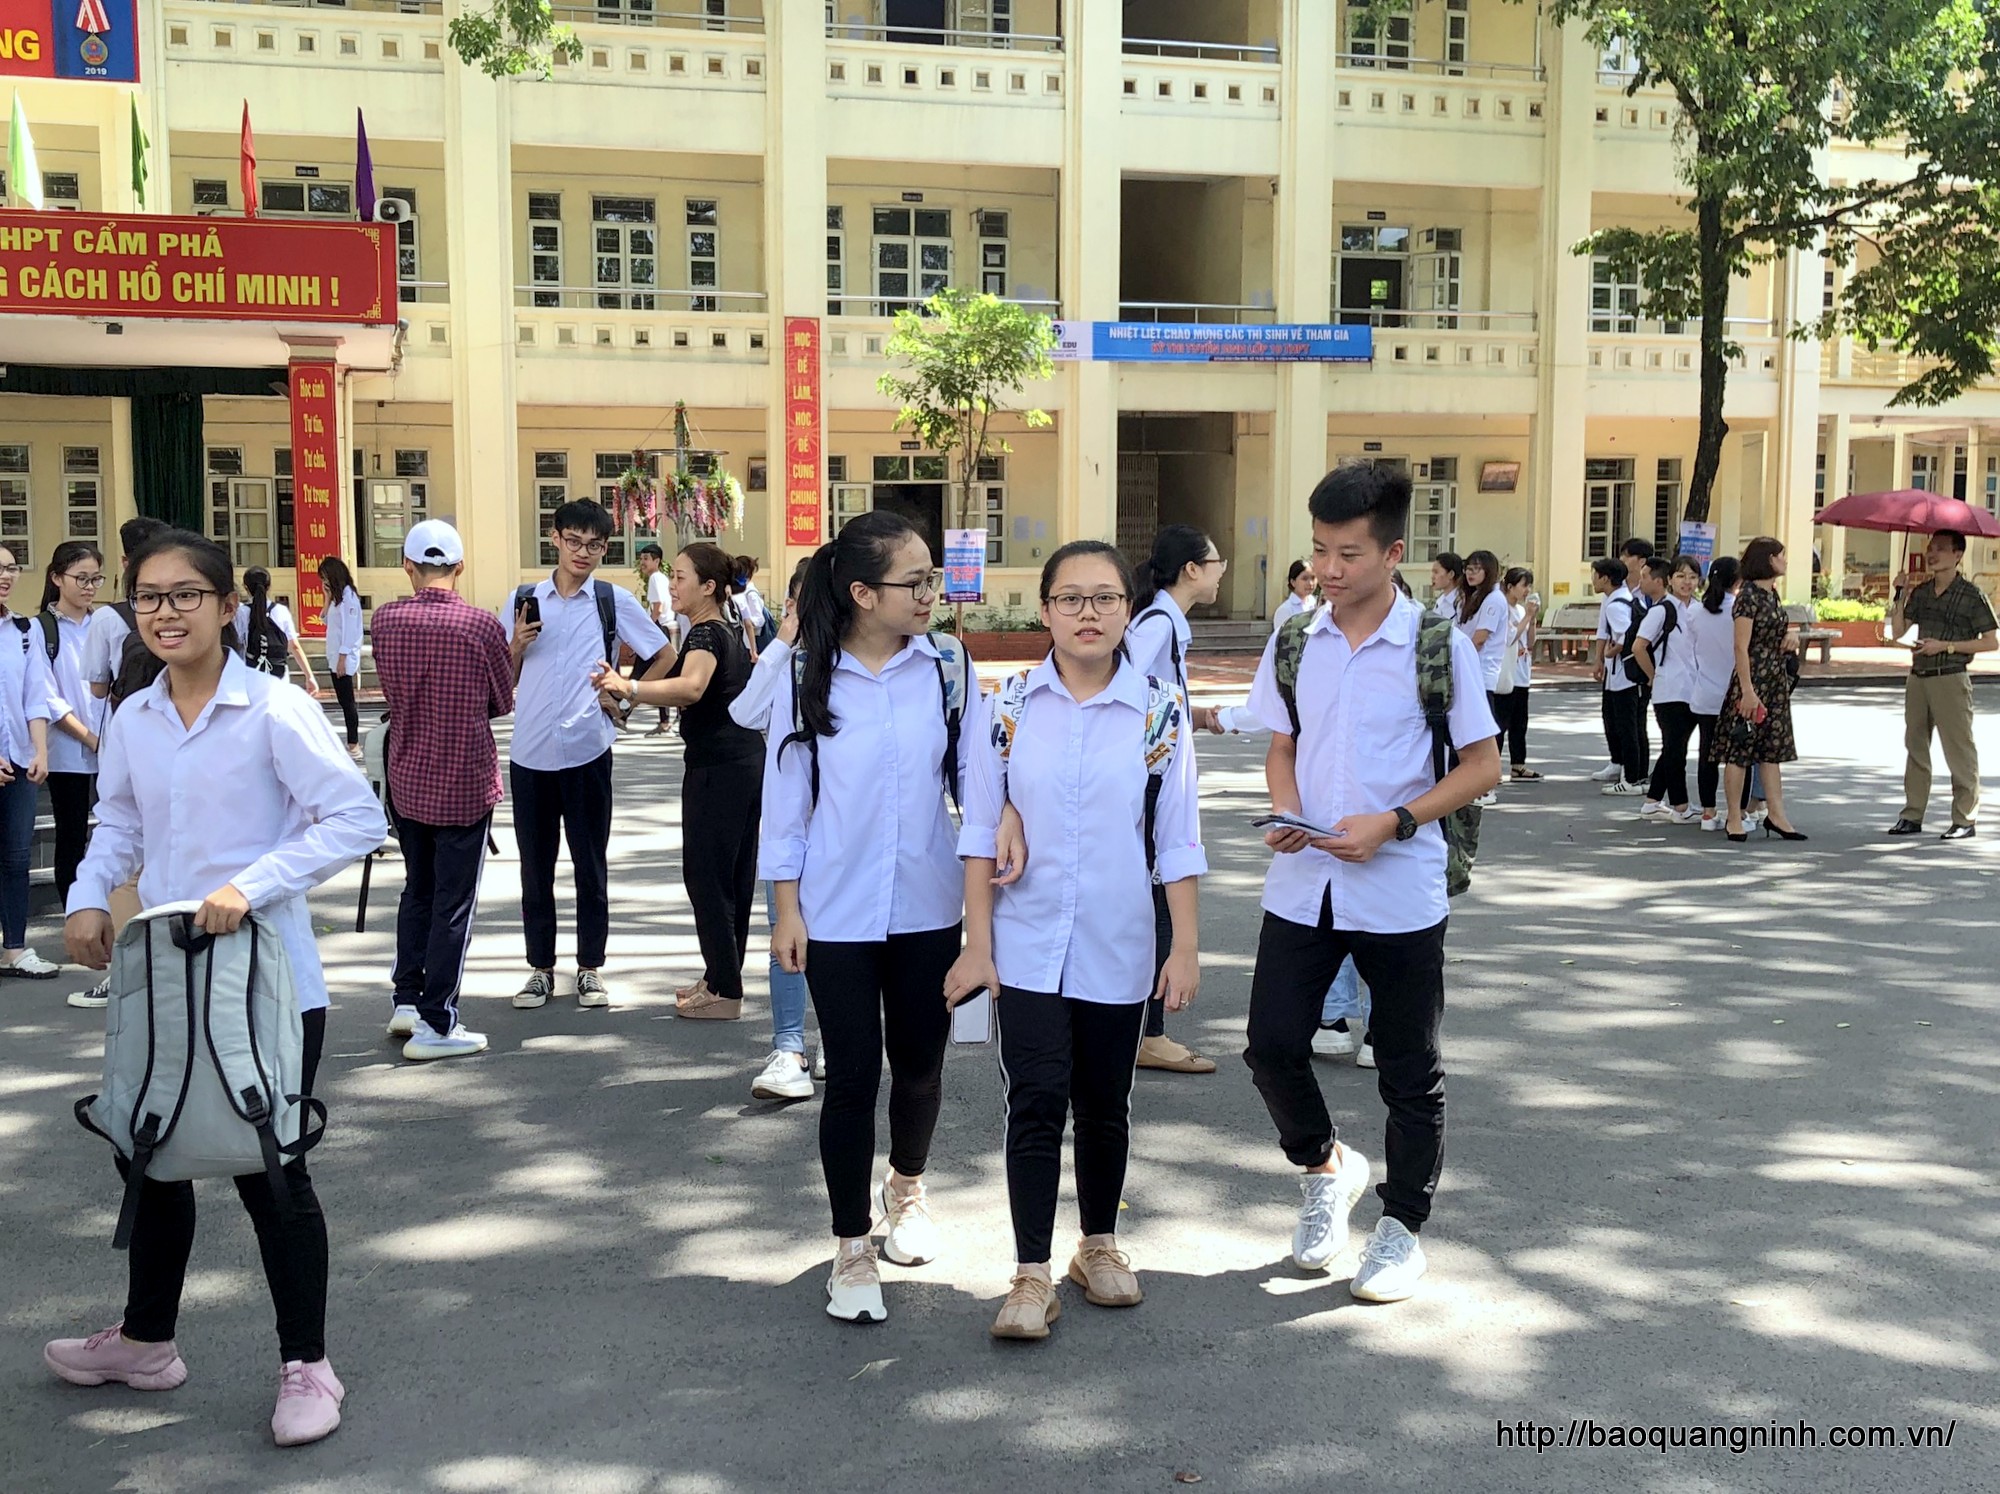 Các thí sinh tại điểm thi Trường THPT Cẩm Phả vui vẻ rời khỏi phòng thi sau khi kết thúc giờ thi môn Ngữ Văn.